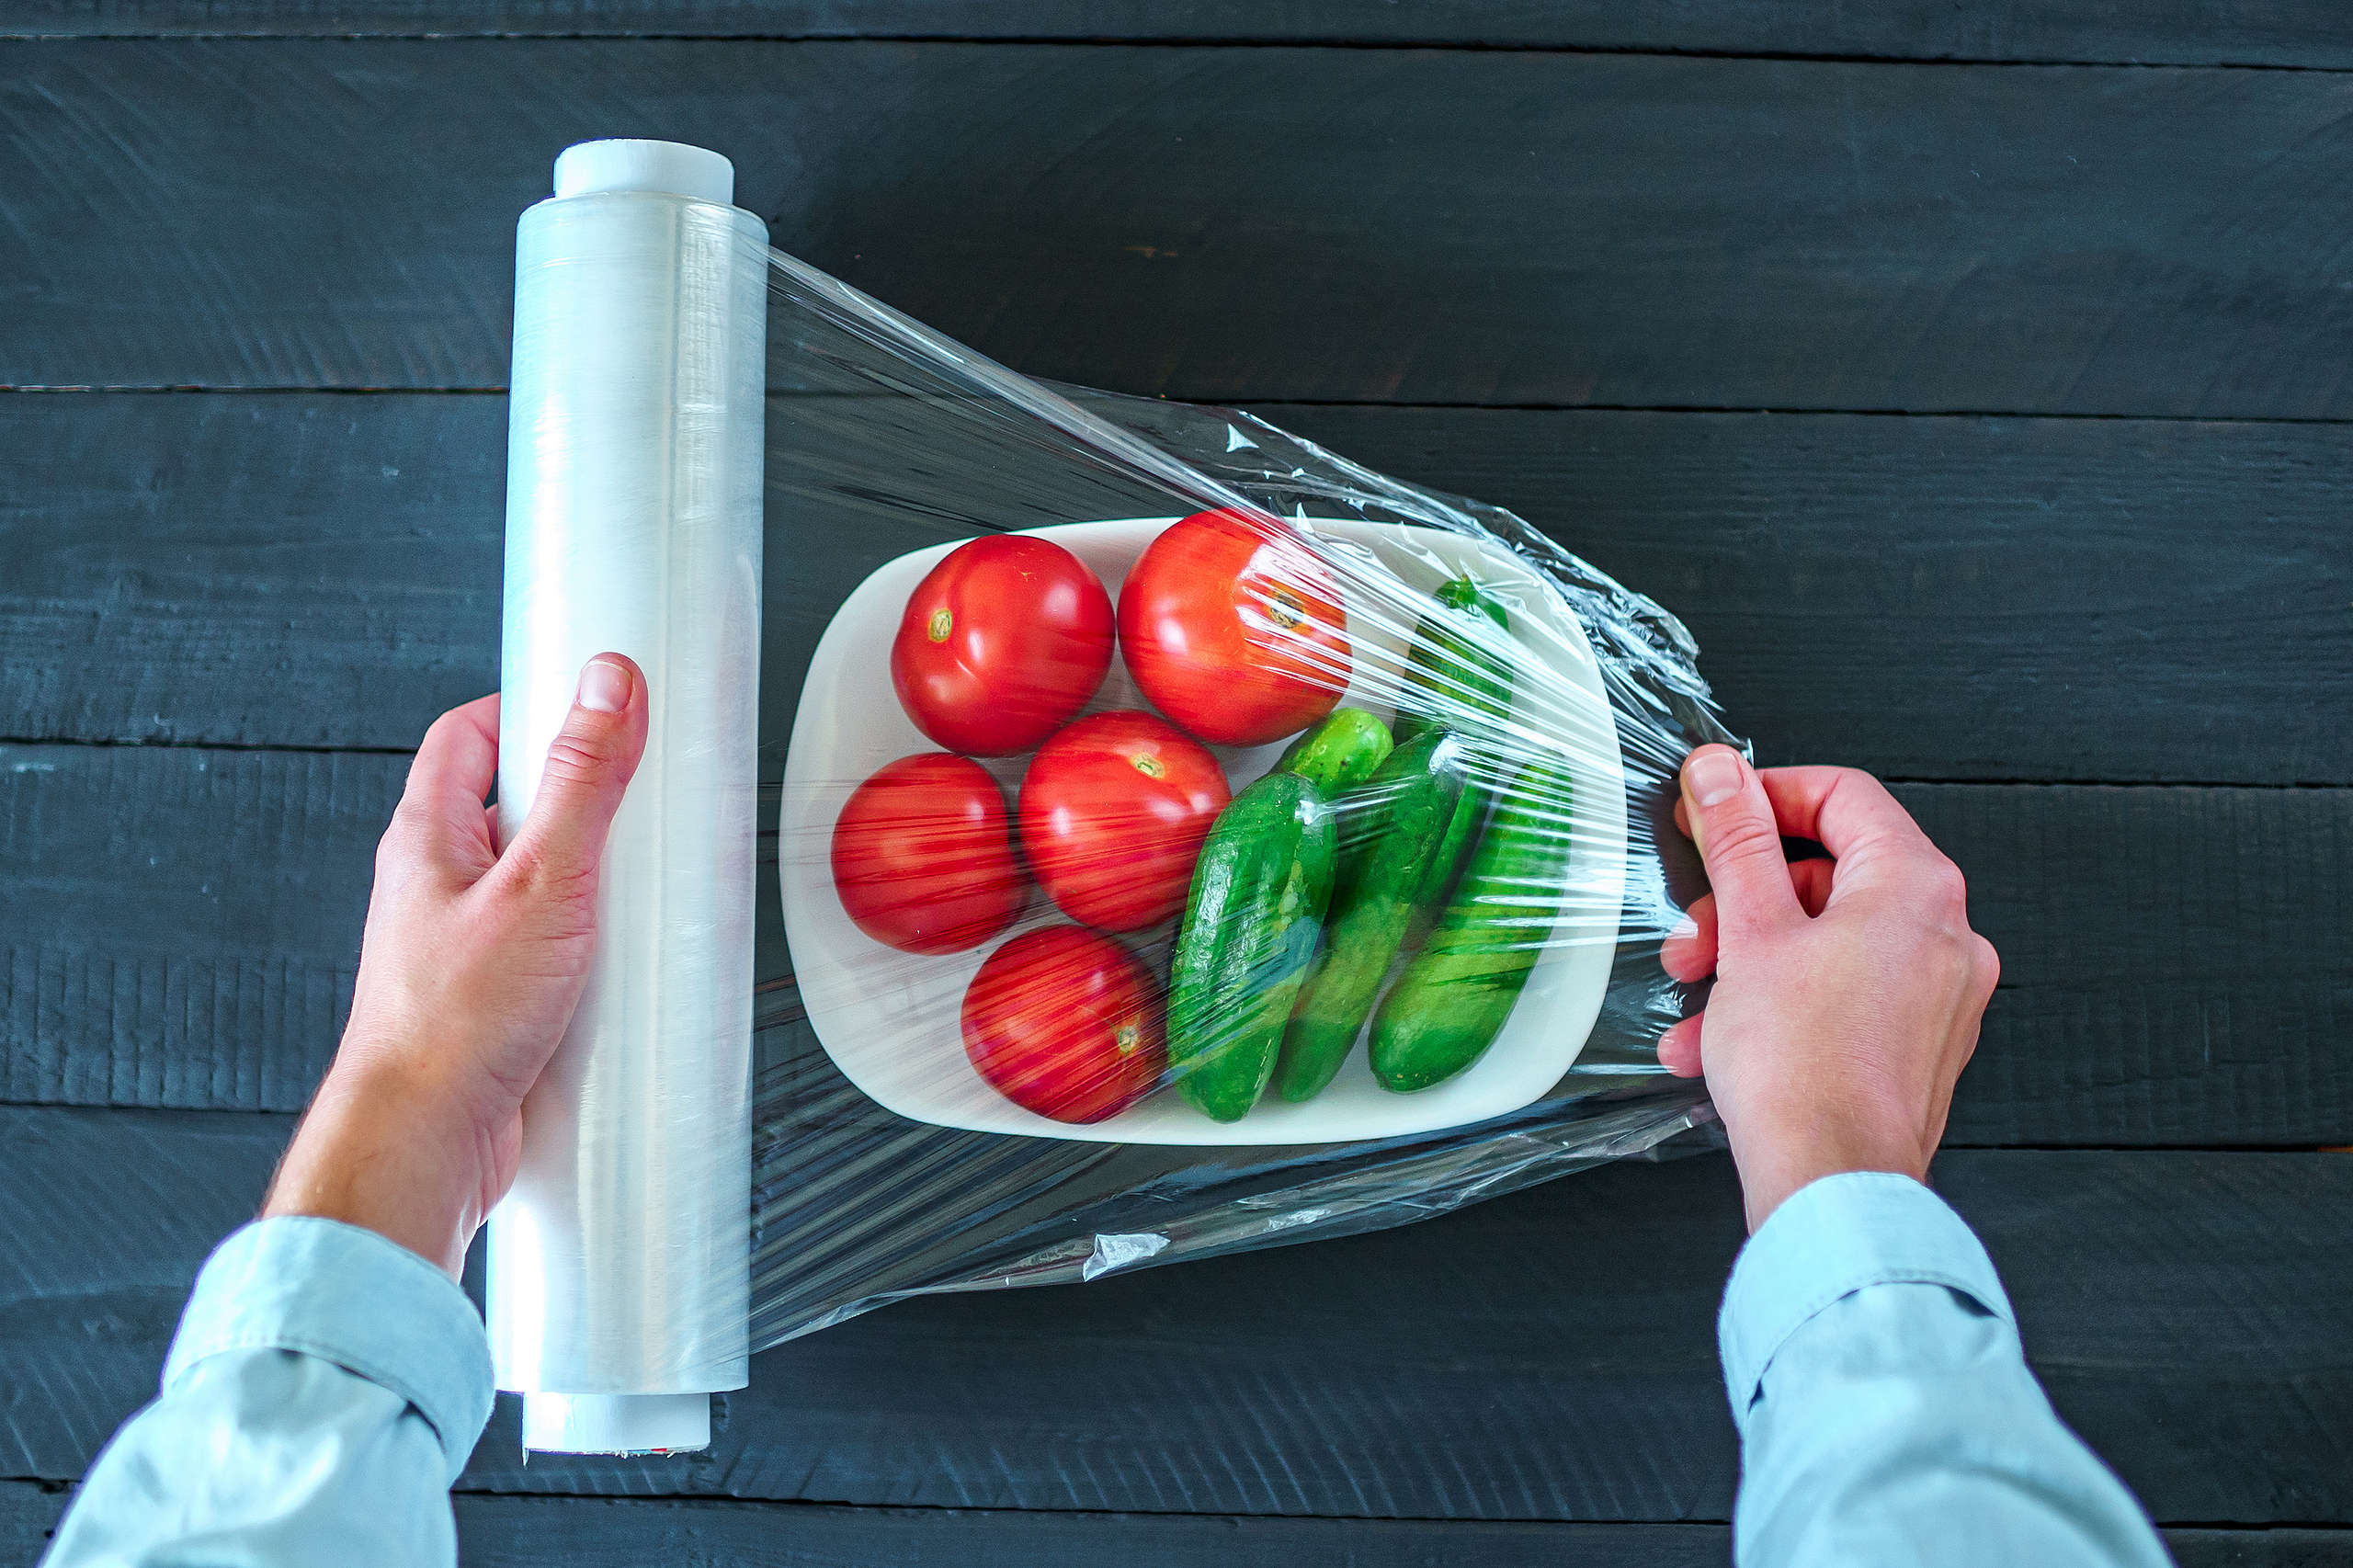 有些市面上販售的食品仍用含有PVC的塑膠盒或保鮮膜包裝，消費者可能在無意間吃進塑化劑。